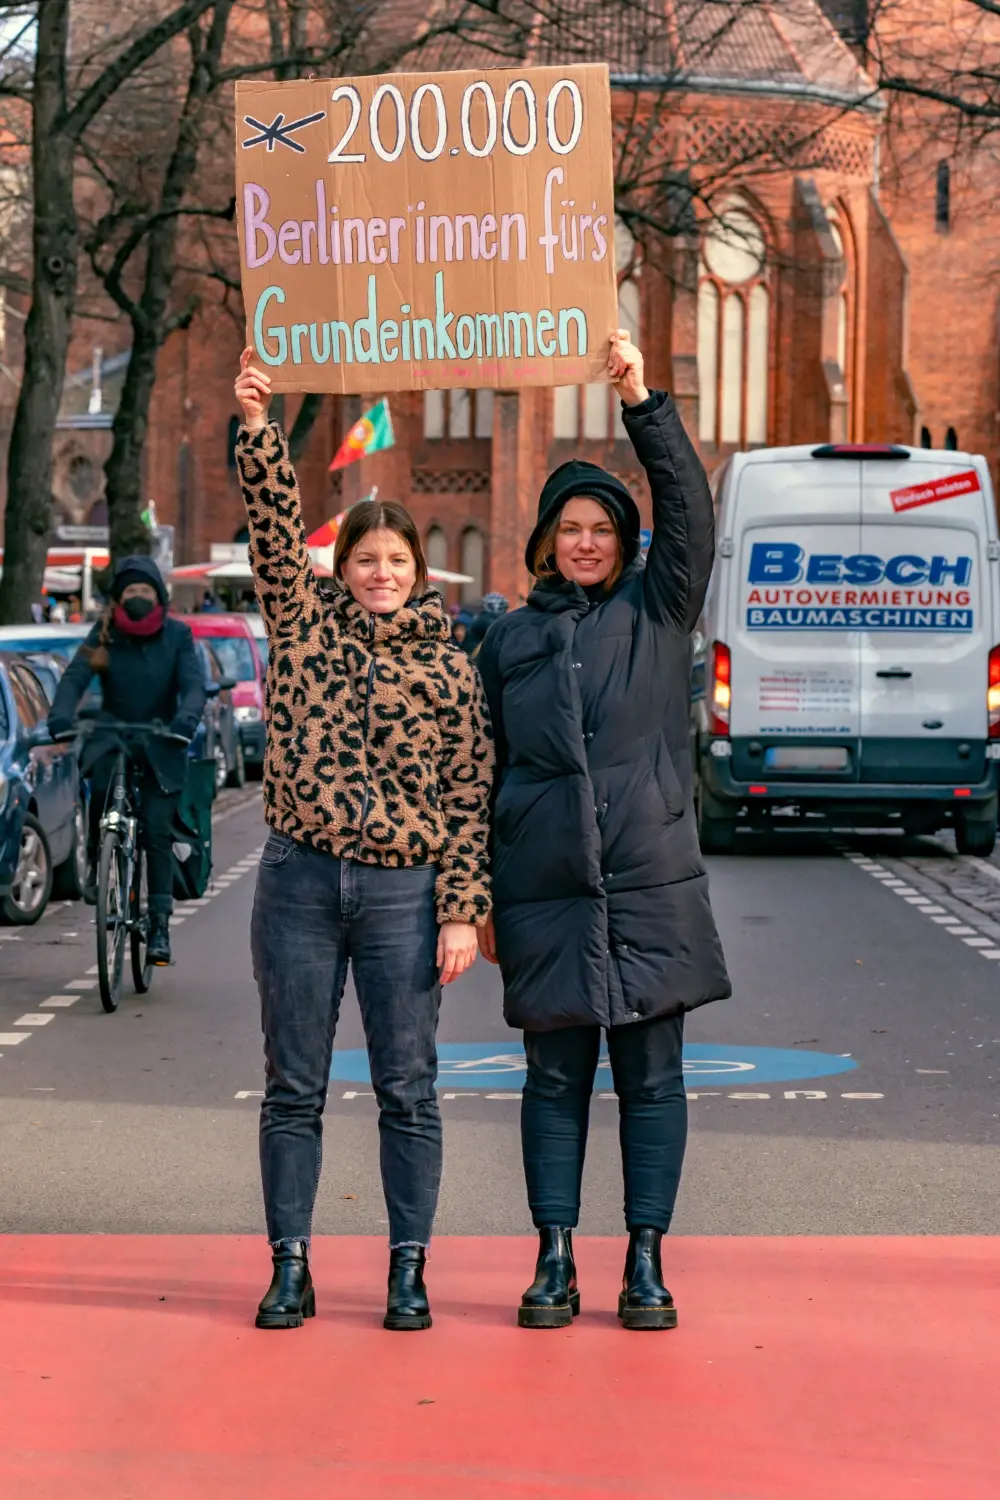 2 Mitglieder der Expedition Grundeinkommen halten ein Plakat mit der Aufschrift "200.000 Berliner innen fürs Grundeinkommen"